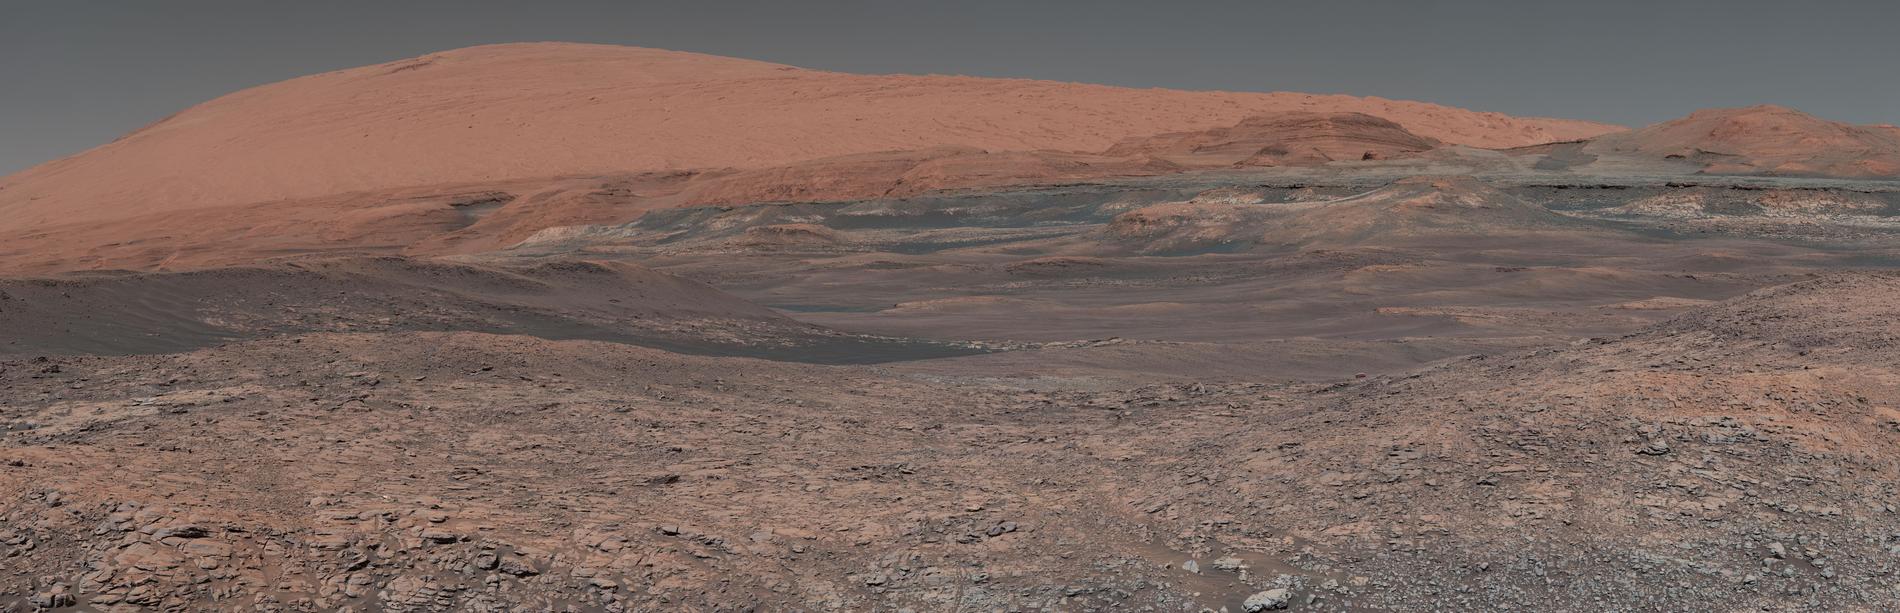 Flera sammanfogade bilder över området ”Mount Sharp”, ett område forskarna är intresserade av då de tror att delar av området formats av vatten. Curiosity tog bilderna i januari 2018. ”Mount Sharp” står i mitten av ”Gale Crater”, en krater som är 154 kilometers i diameter. 